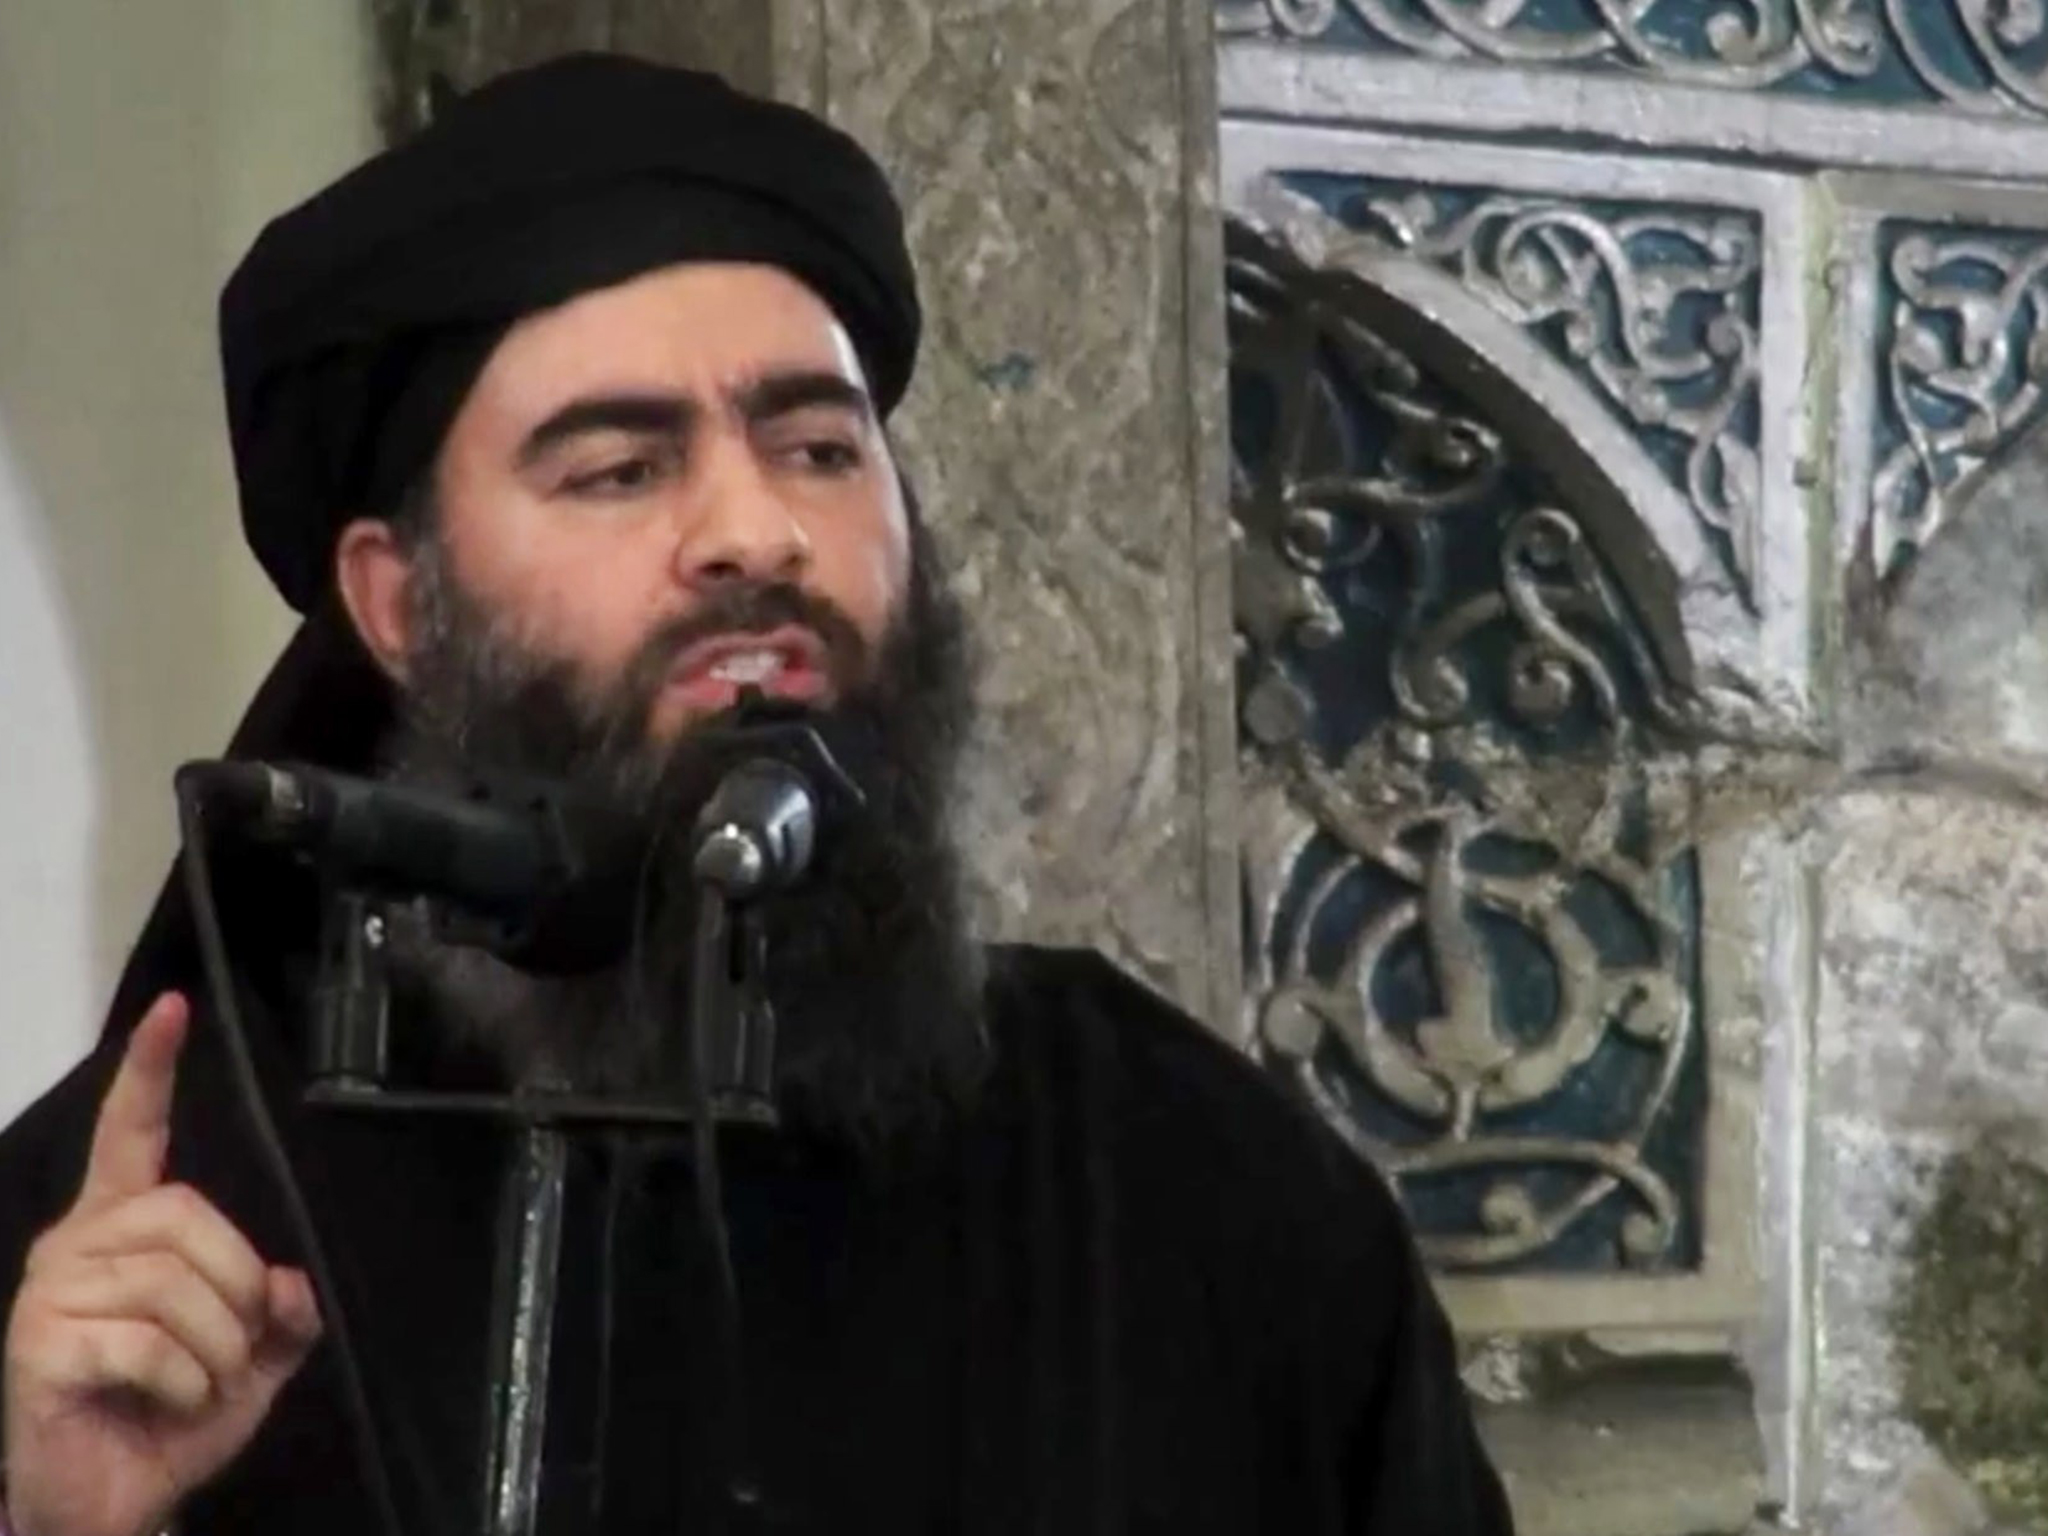 L'OSDH affirme que le chef du groupe Etat islamique, Abou Bakr al-Baghdadi, est mort